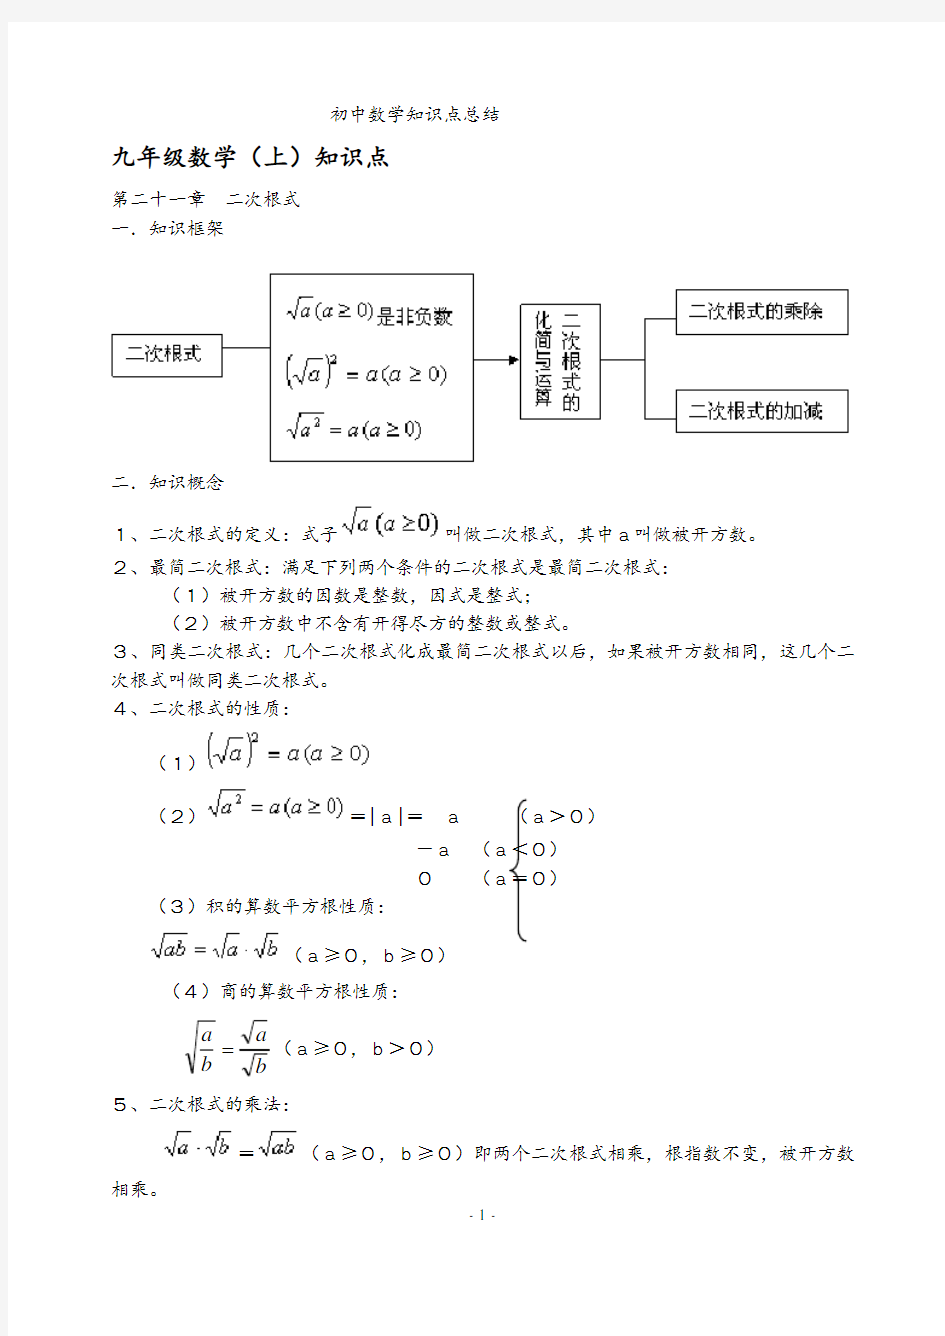 初中数学七、八、九年级知识点及公式总结大全(人教版).pdf